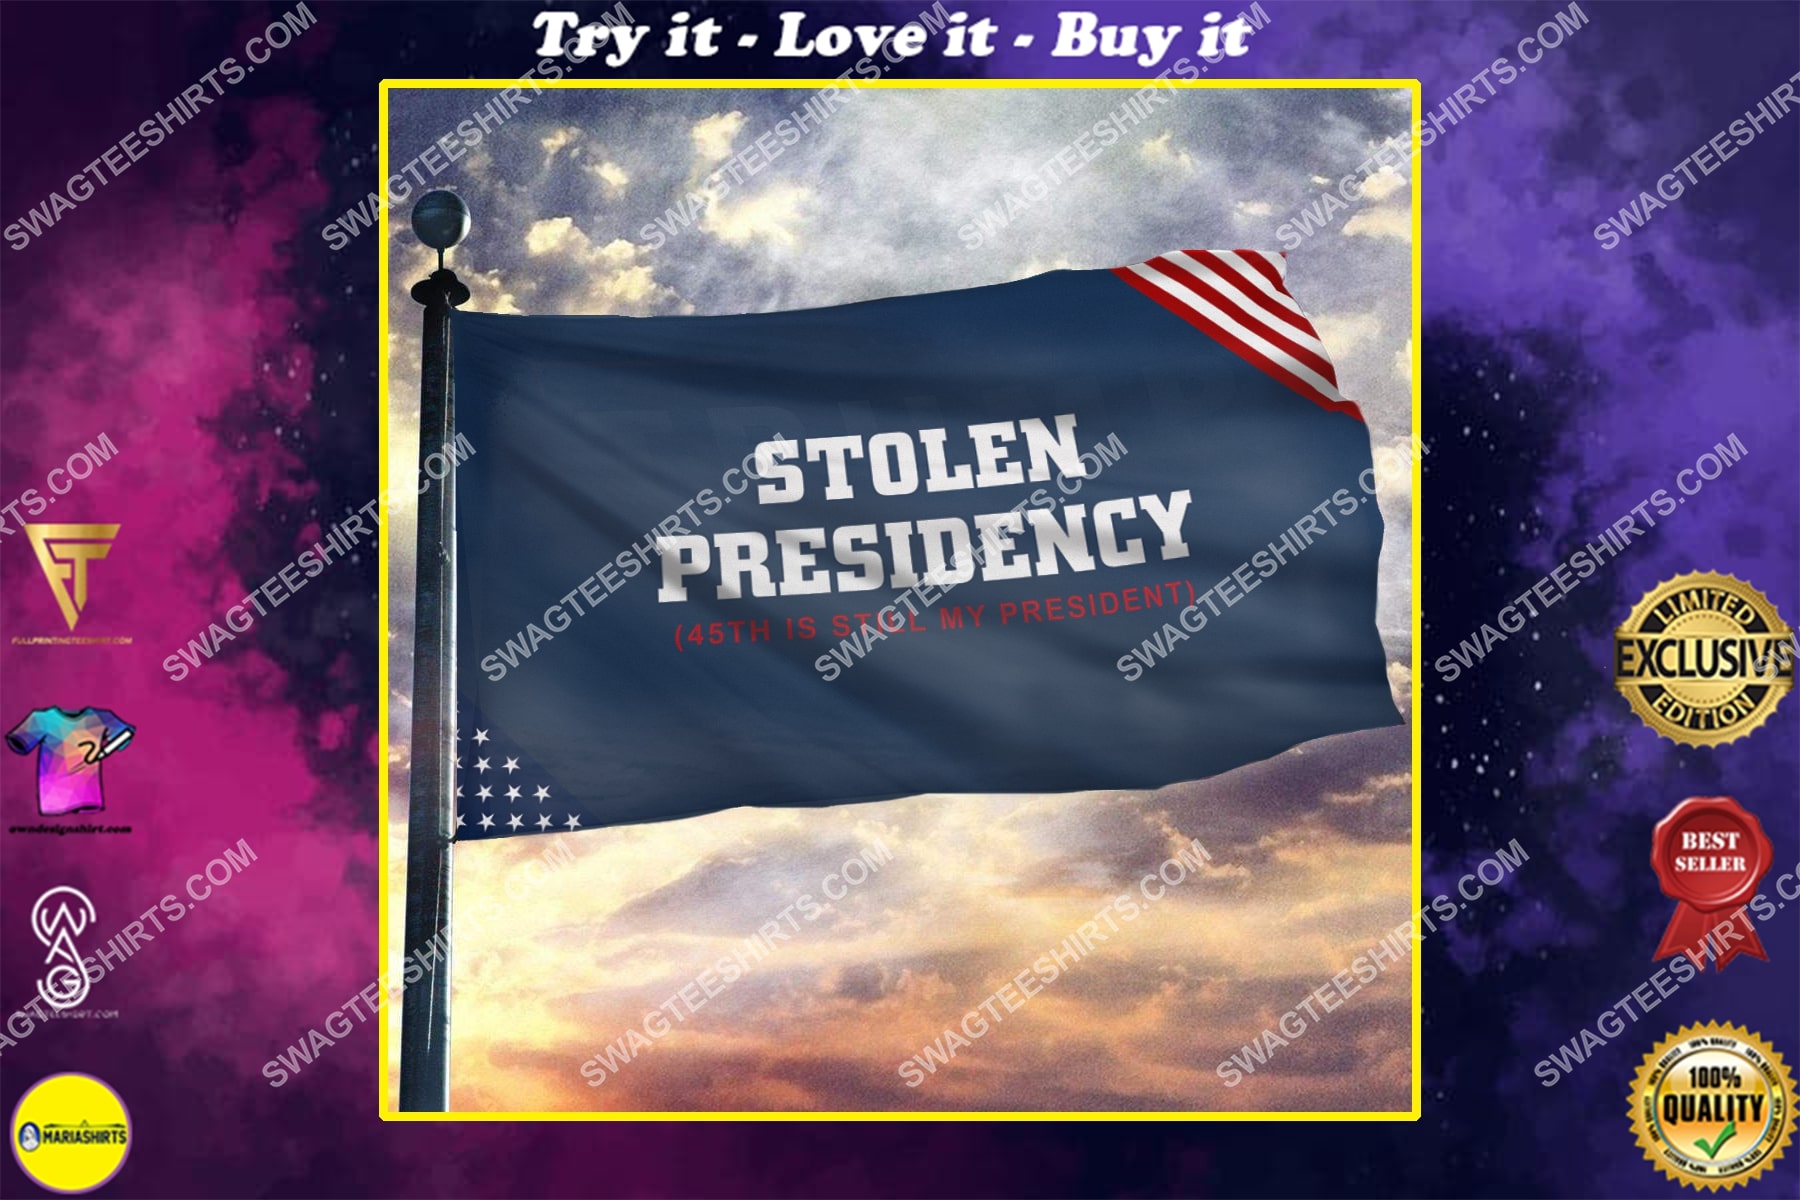 45th is still my president stolen presidency politics flag